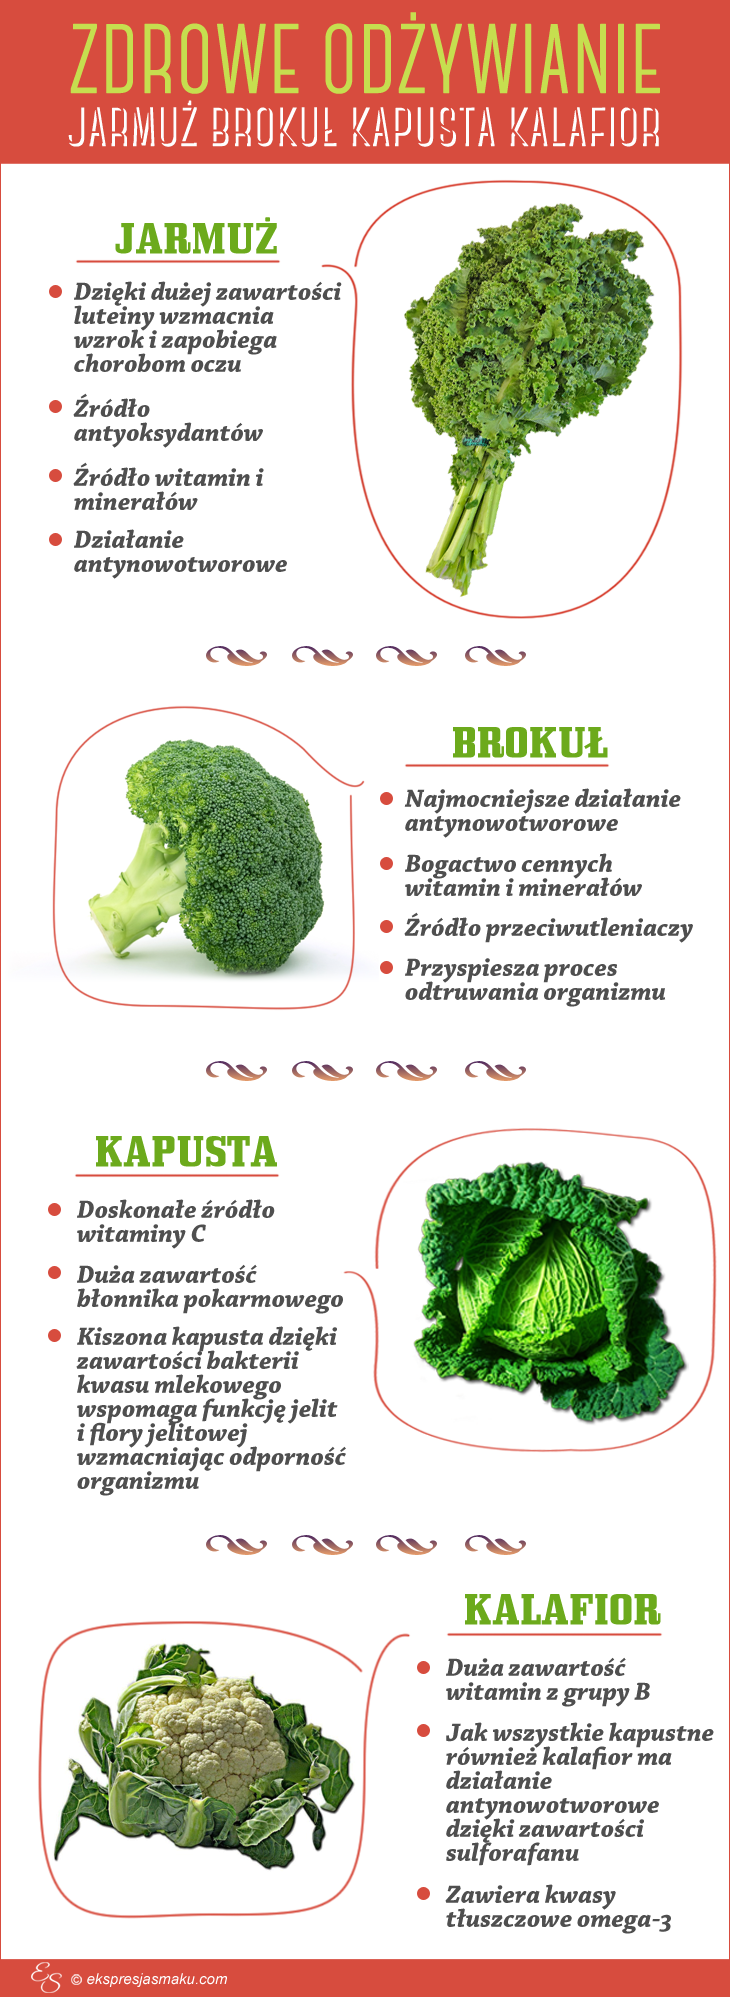 zdrowe odżywianie brokuł jarmuż kapusta kalafior infografika